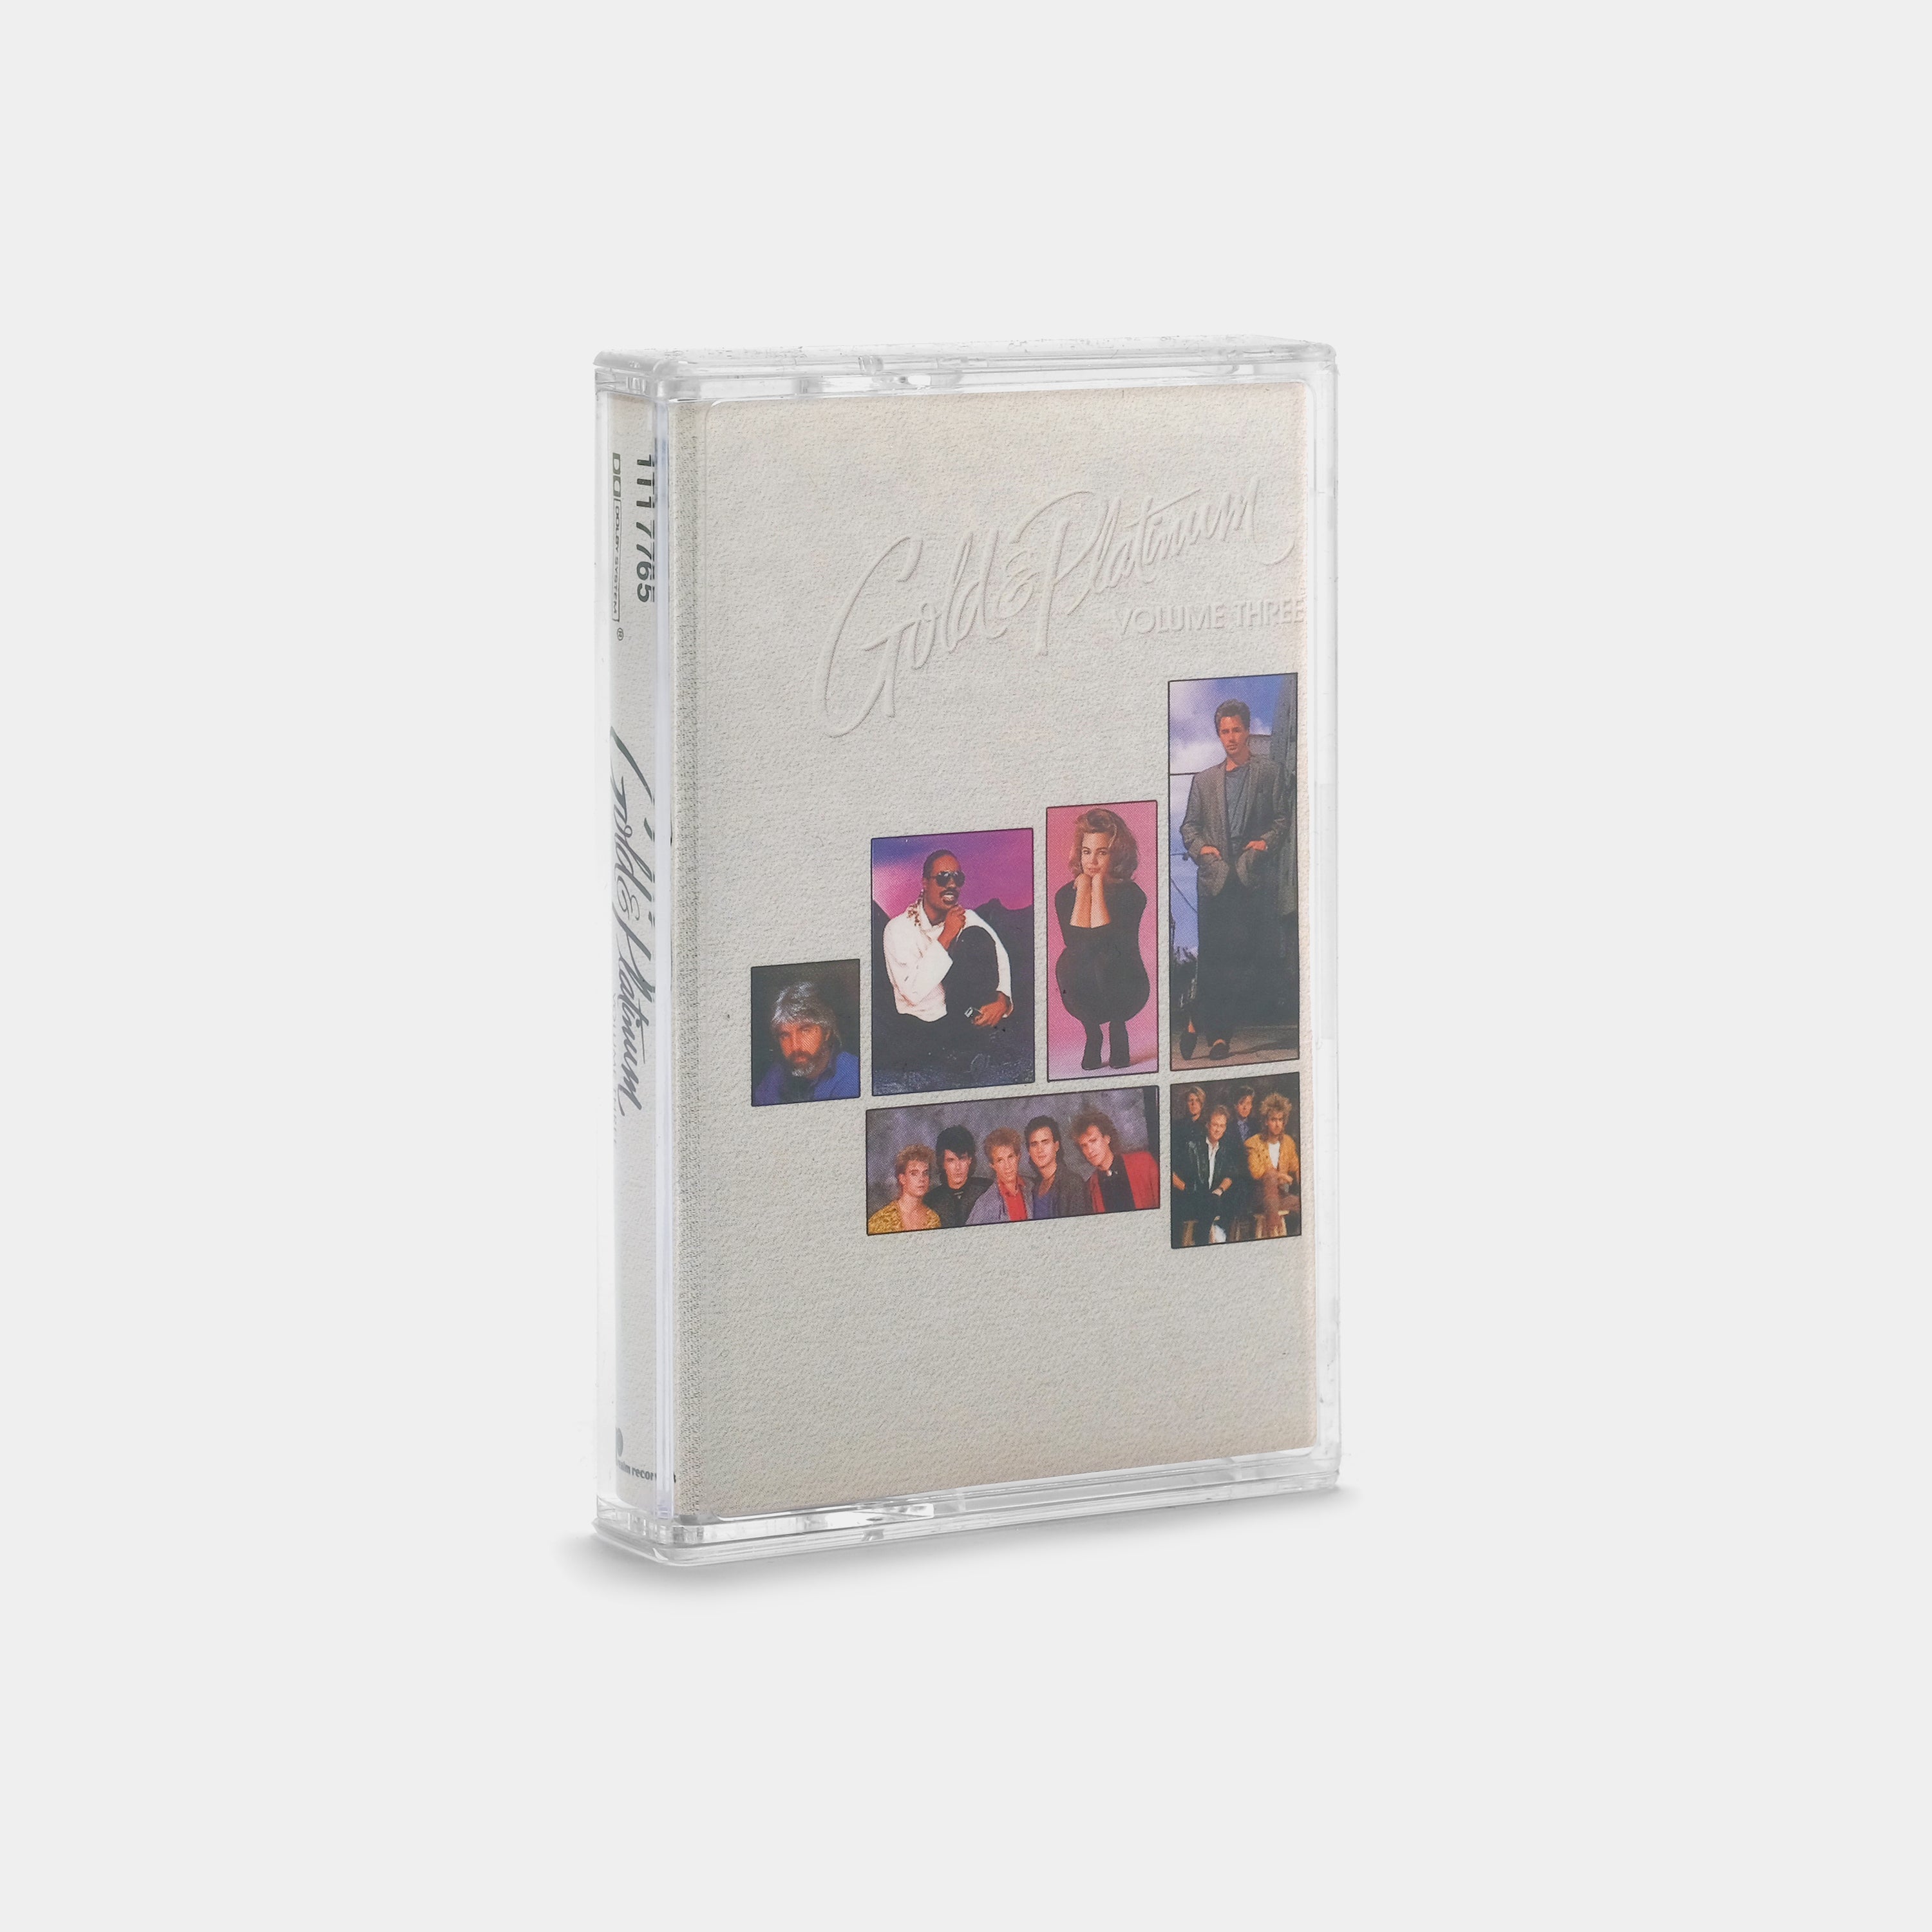 Gold & Platinum Volume Three Cassette Tape